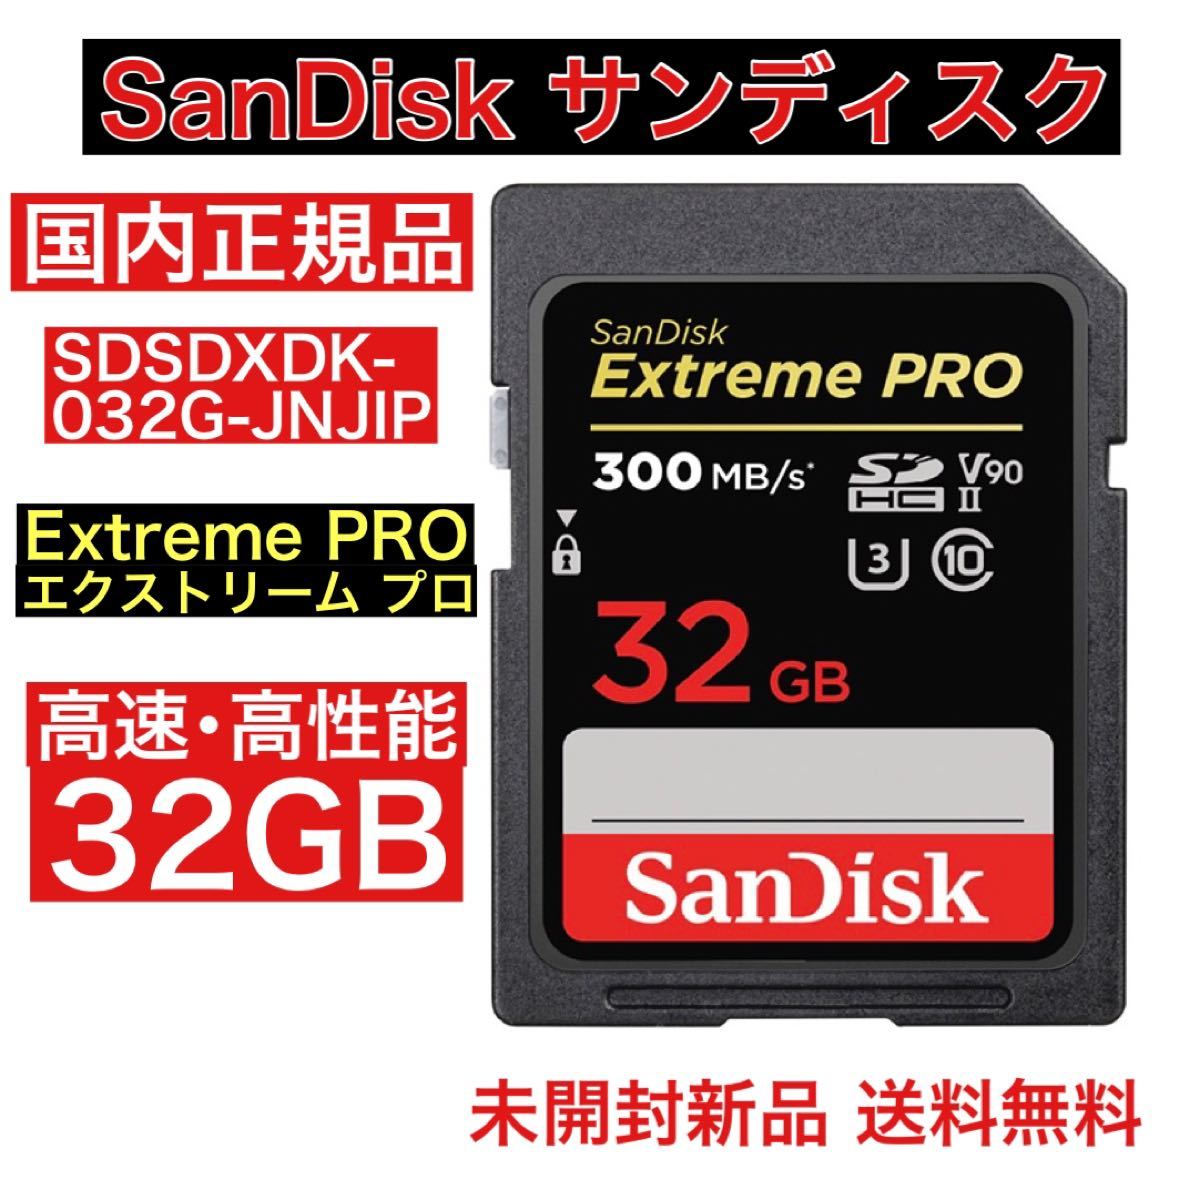 大人気低価 サンディスク SDカード64GB Z2HoA-m95589646797 限定品好評